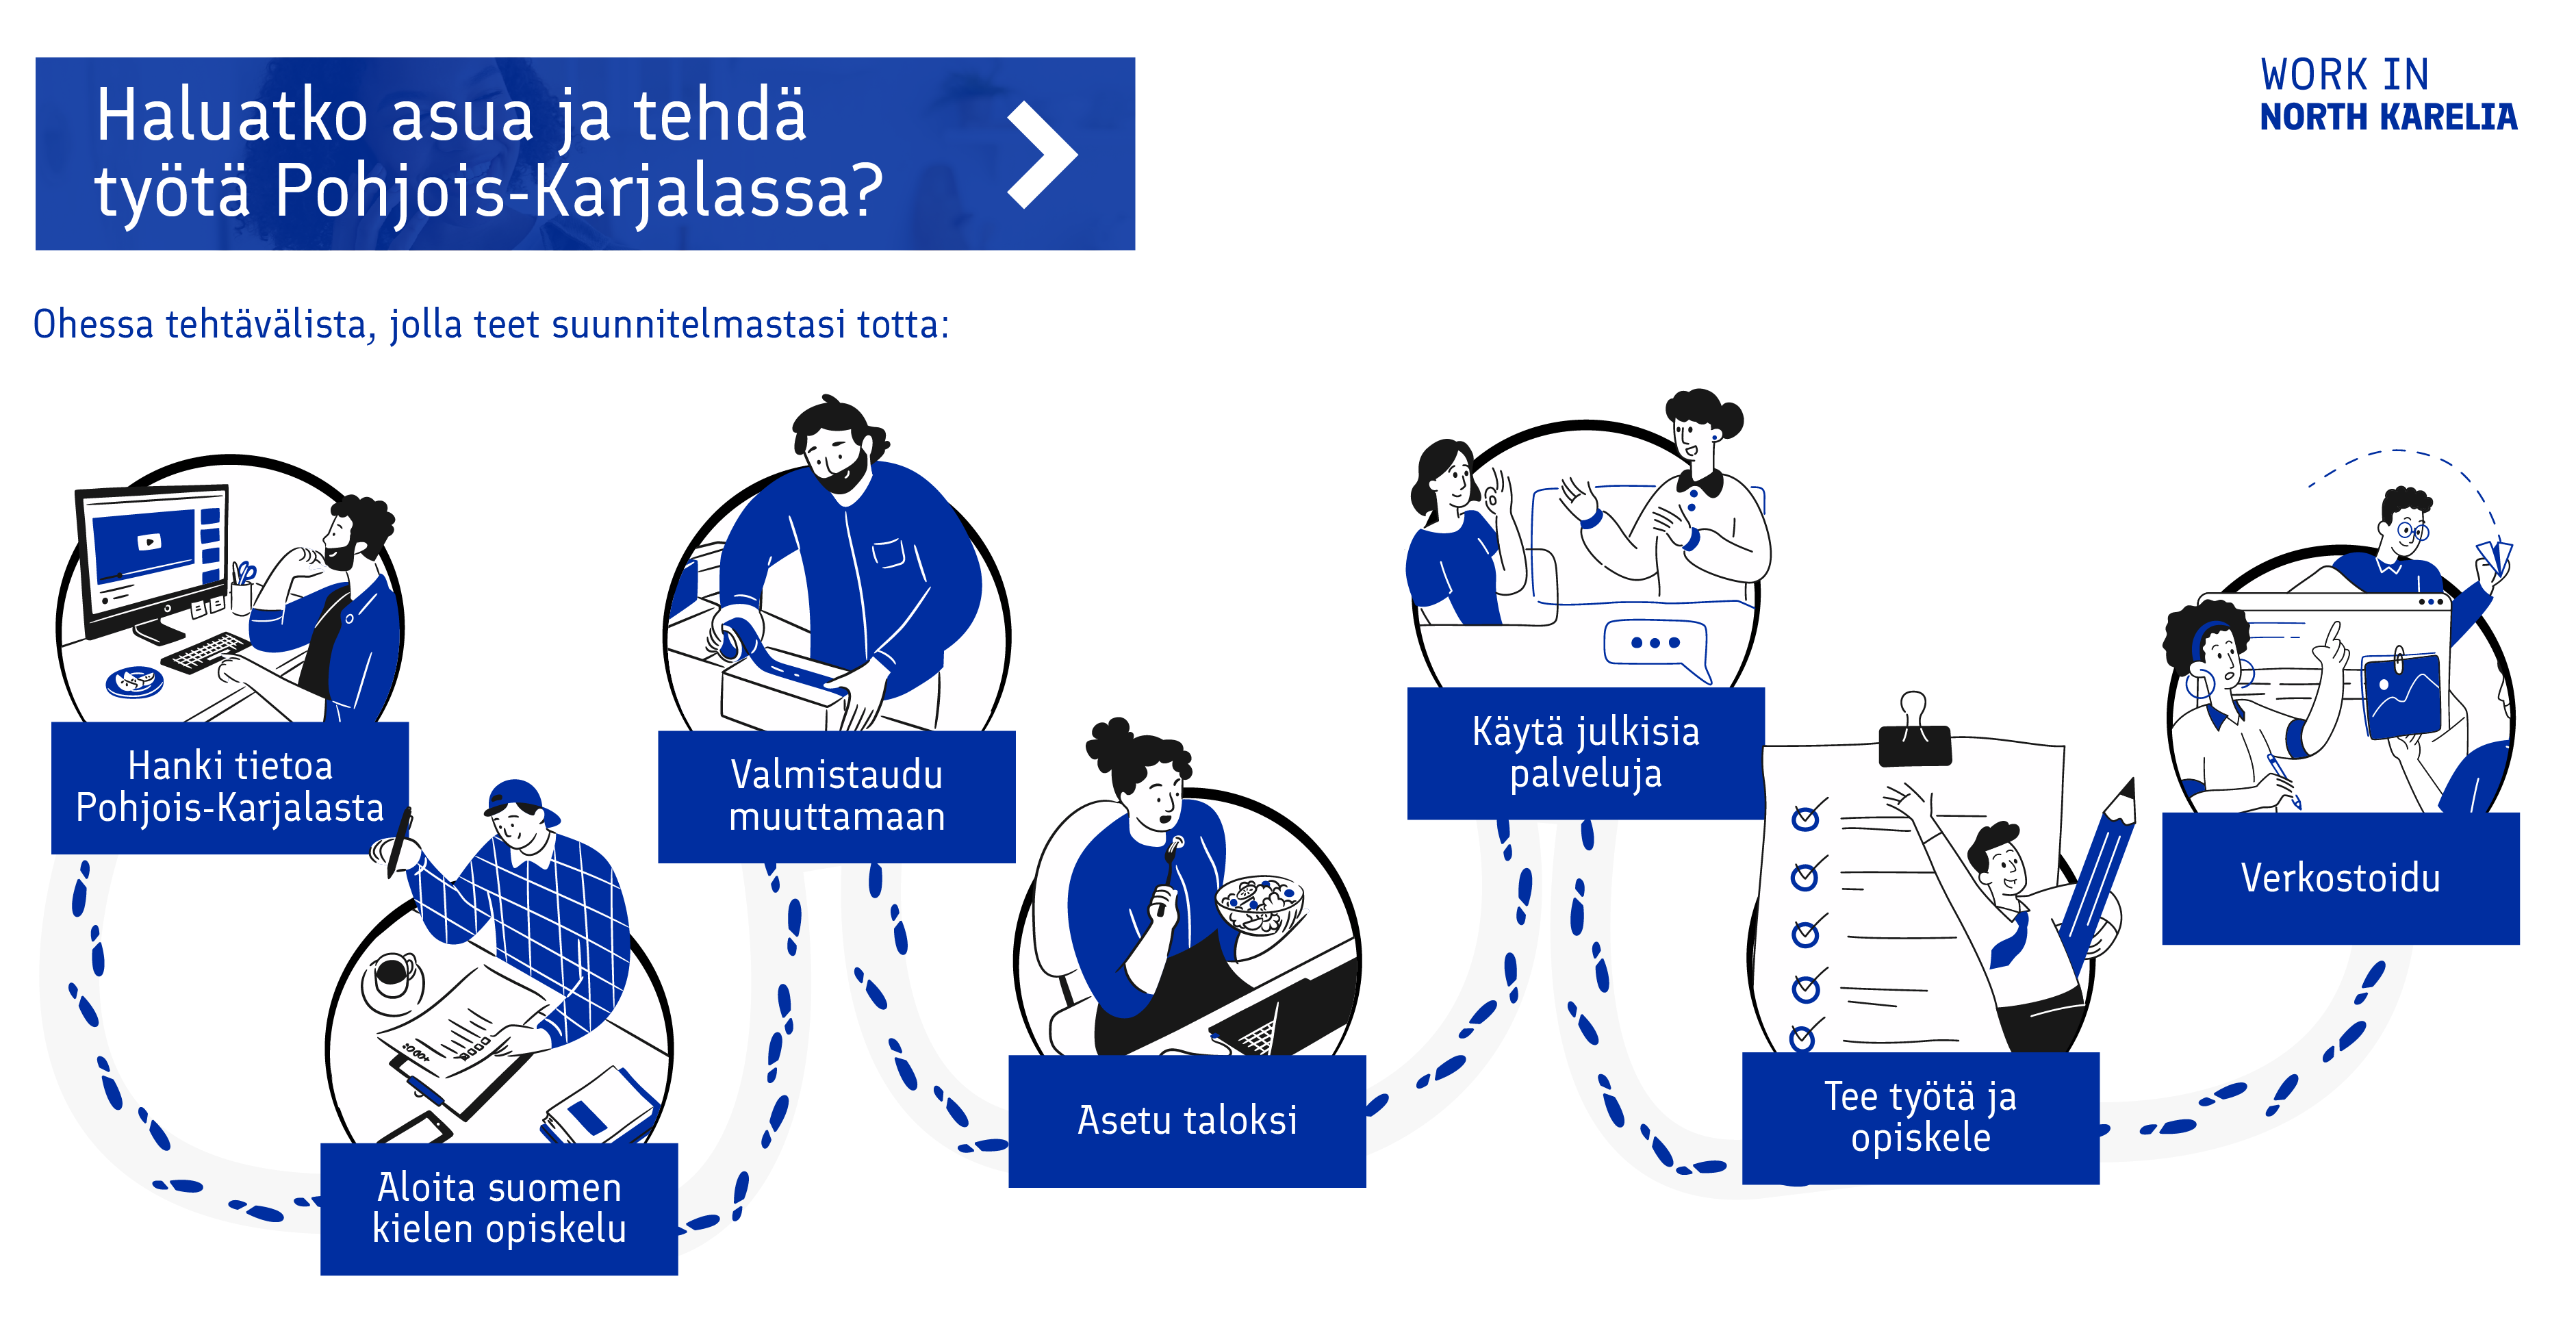 Listaus toimenpiteistä, jotka auttavat sinua tulemaan töihin Pohjois-Karjalaan.